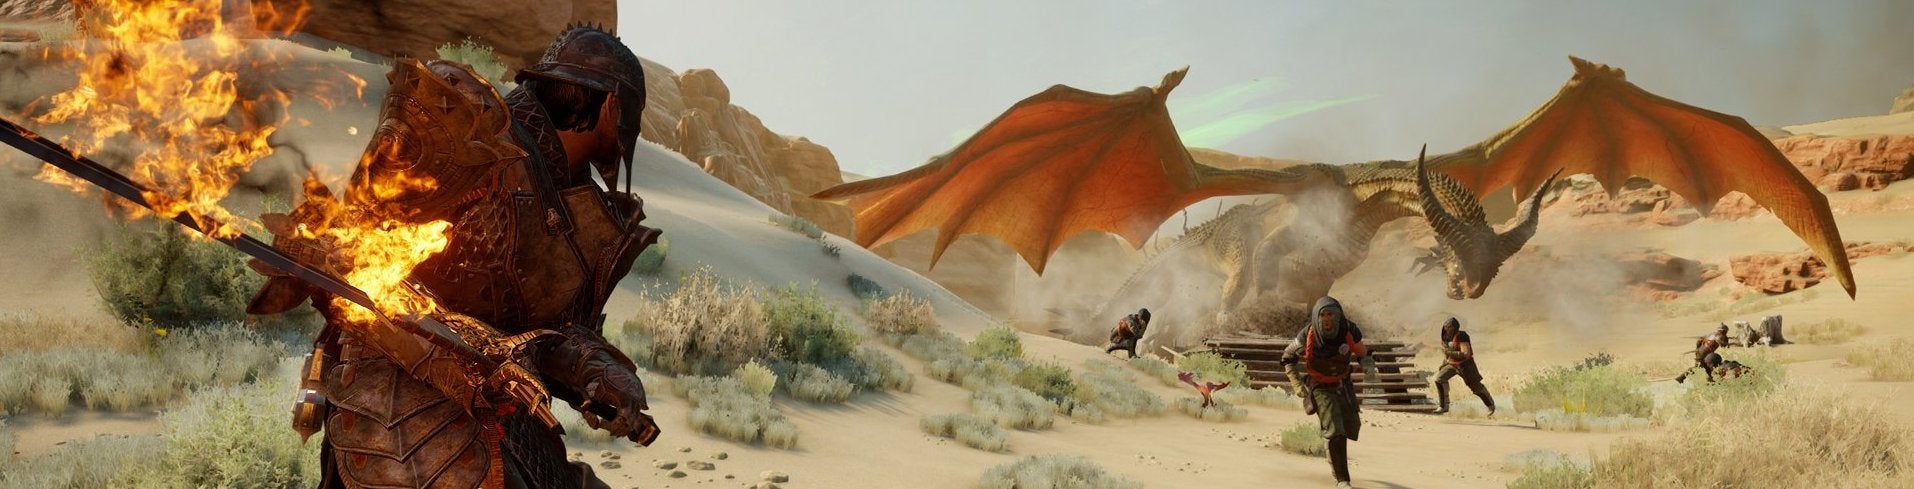 Image for Šestihodinové demo Dragon Age Inquisition